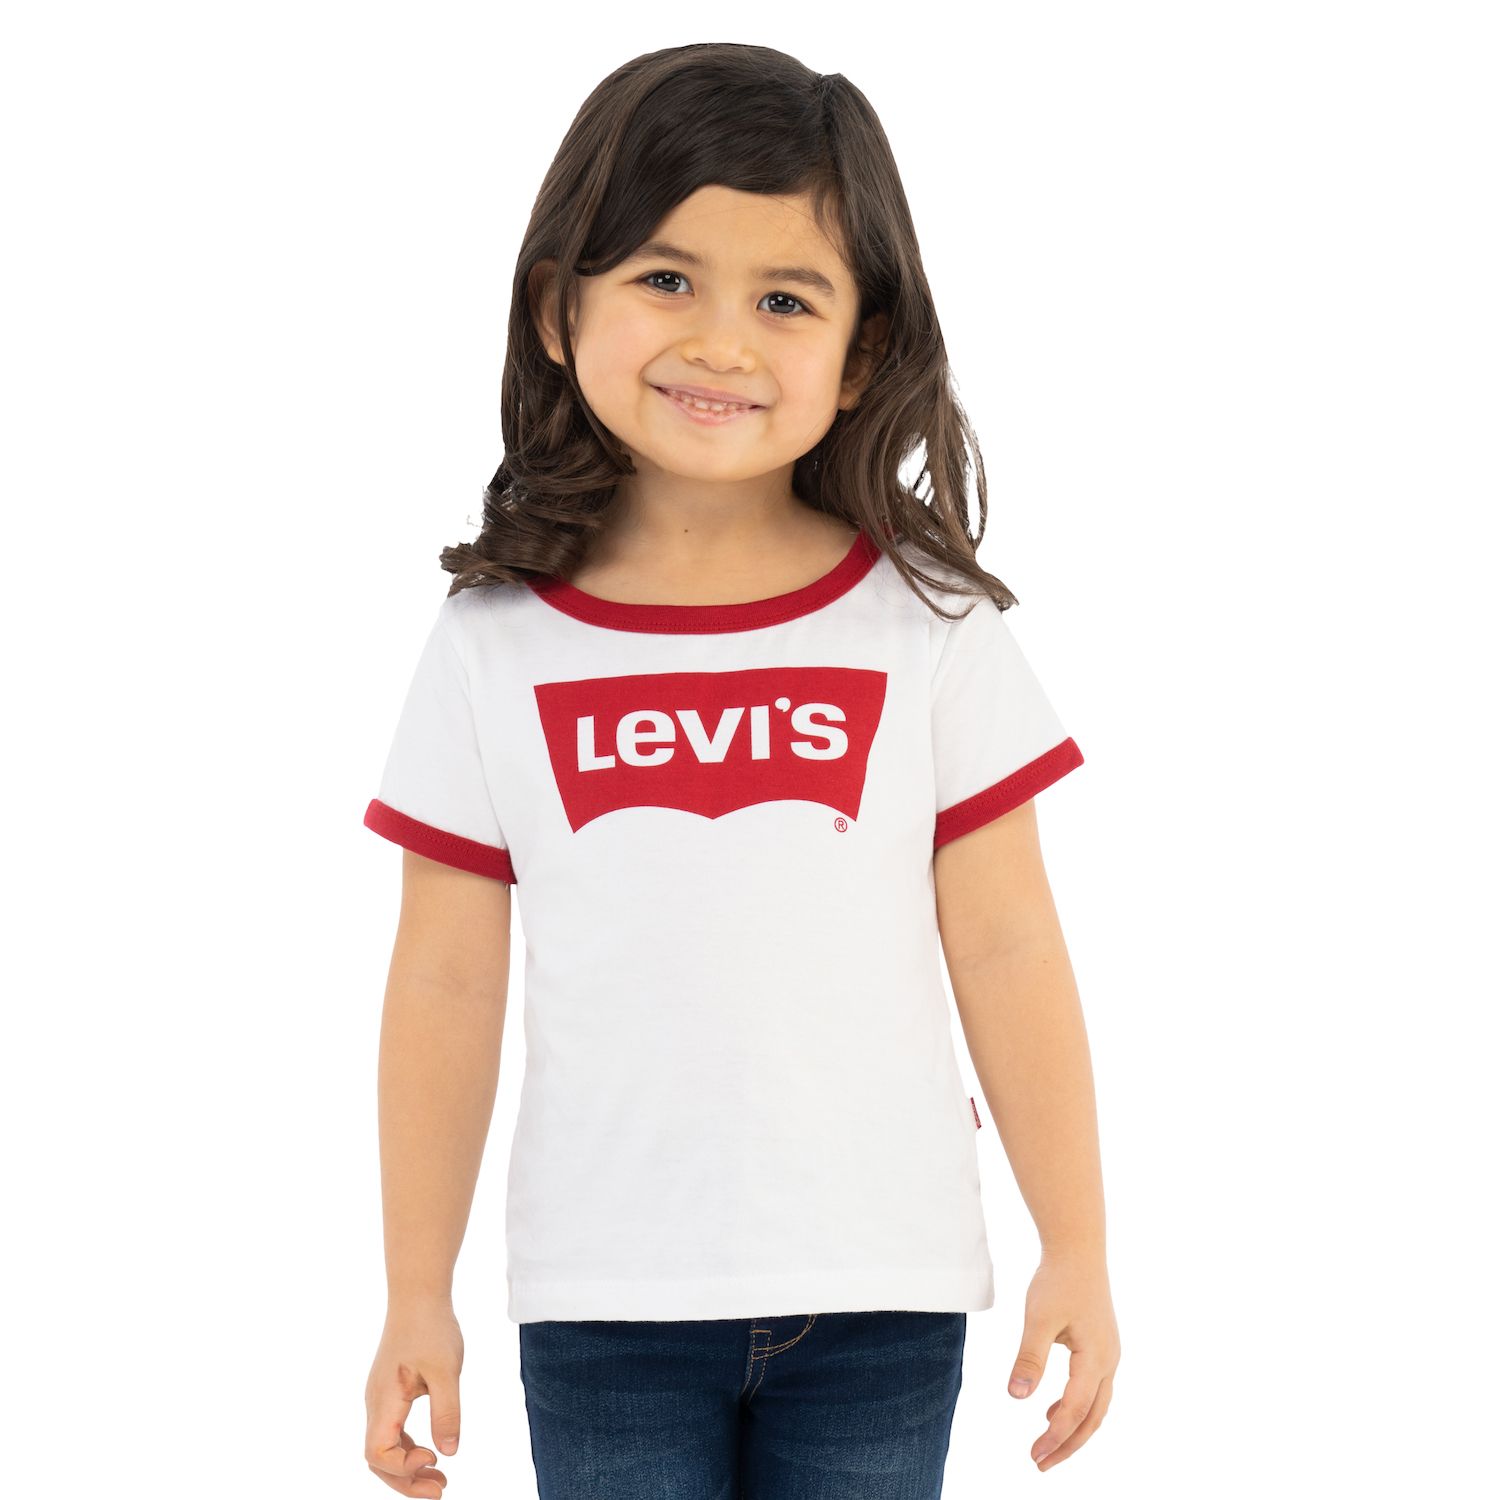 Image for Levi's Toddler Girl Short-Sleeve Ringer Tee at Kohl's.